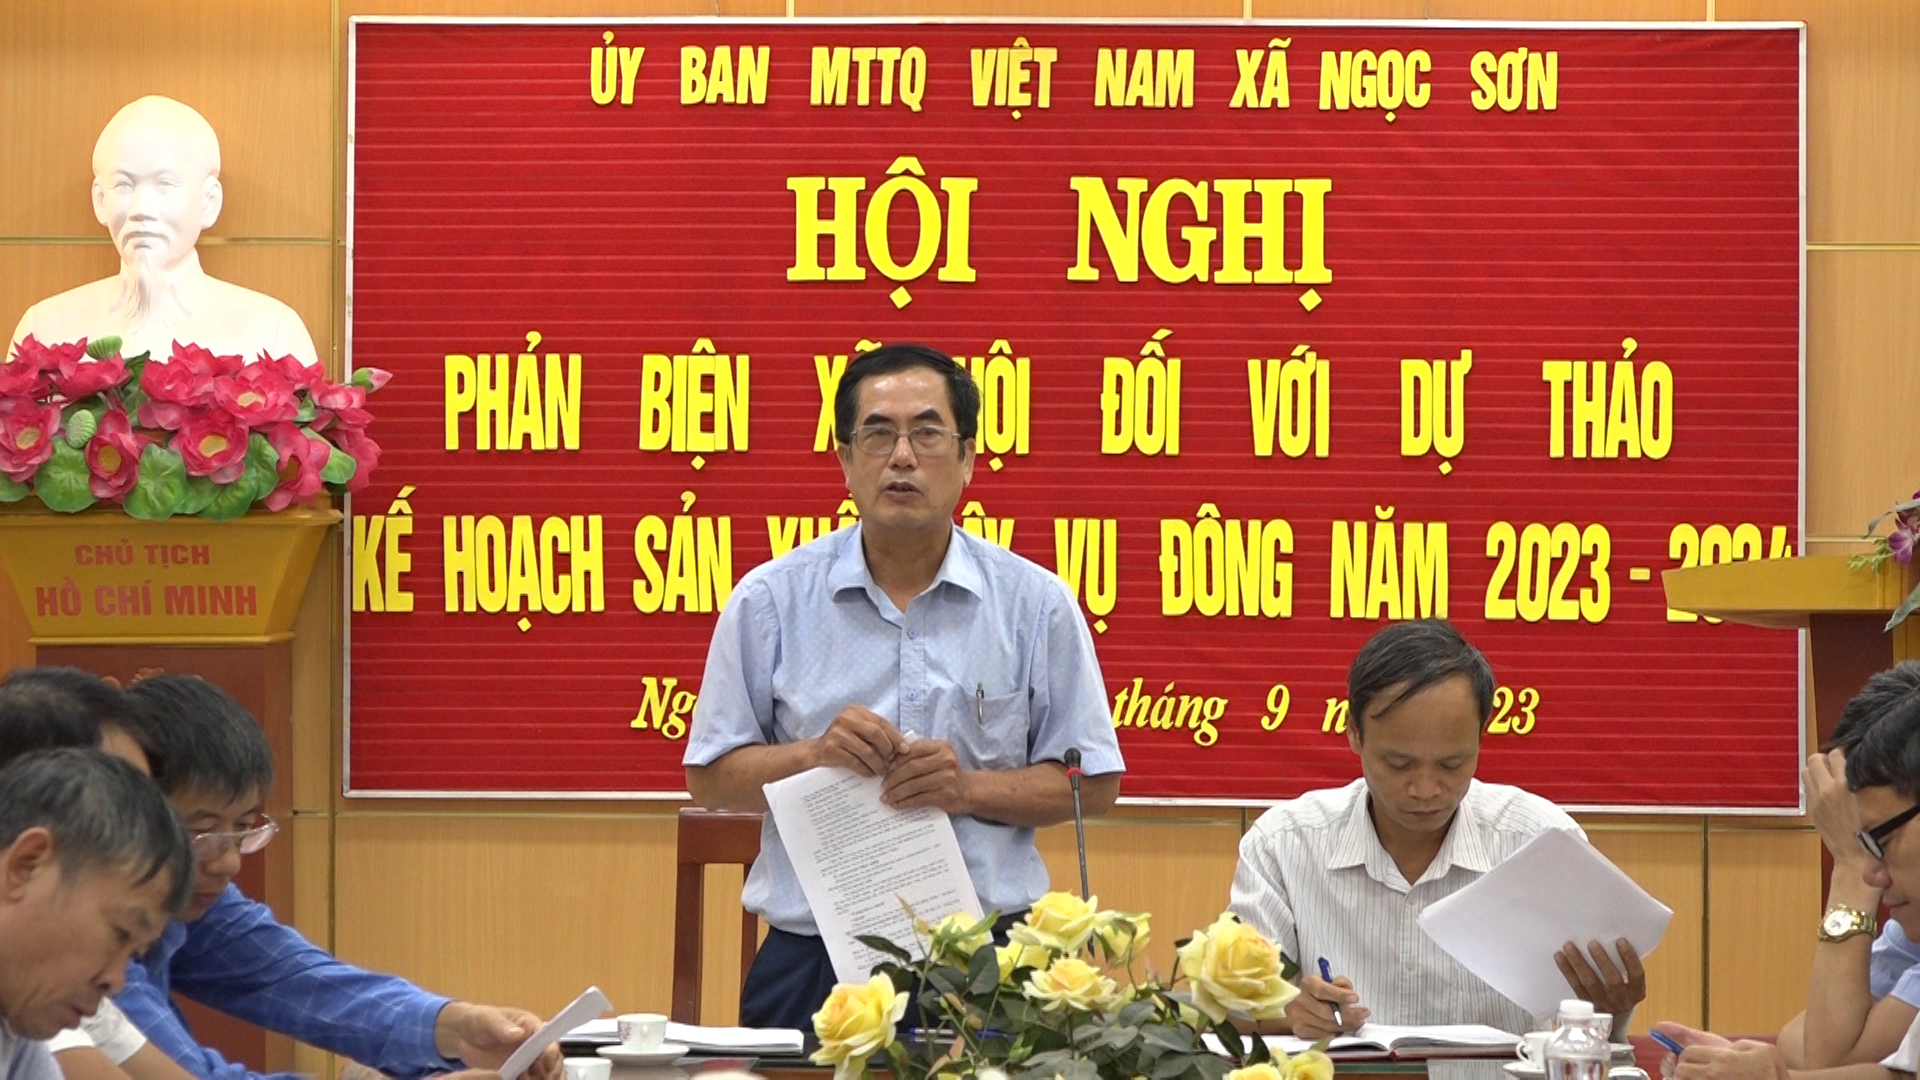 ĐC Chủ tịch UBND xã Ngọc Sơn phát biểu kết luận tại buổi phản biện.jpg